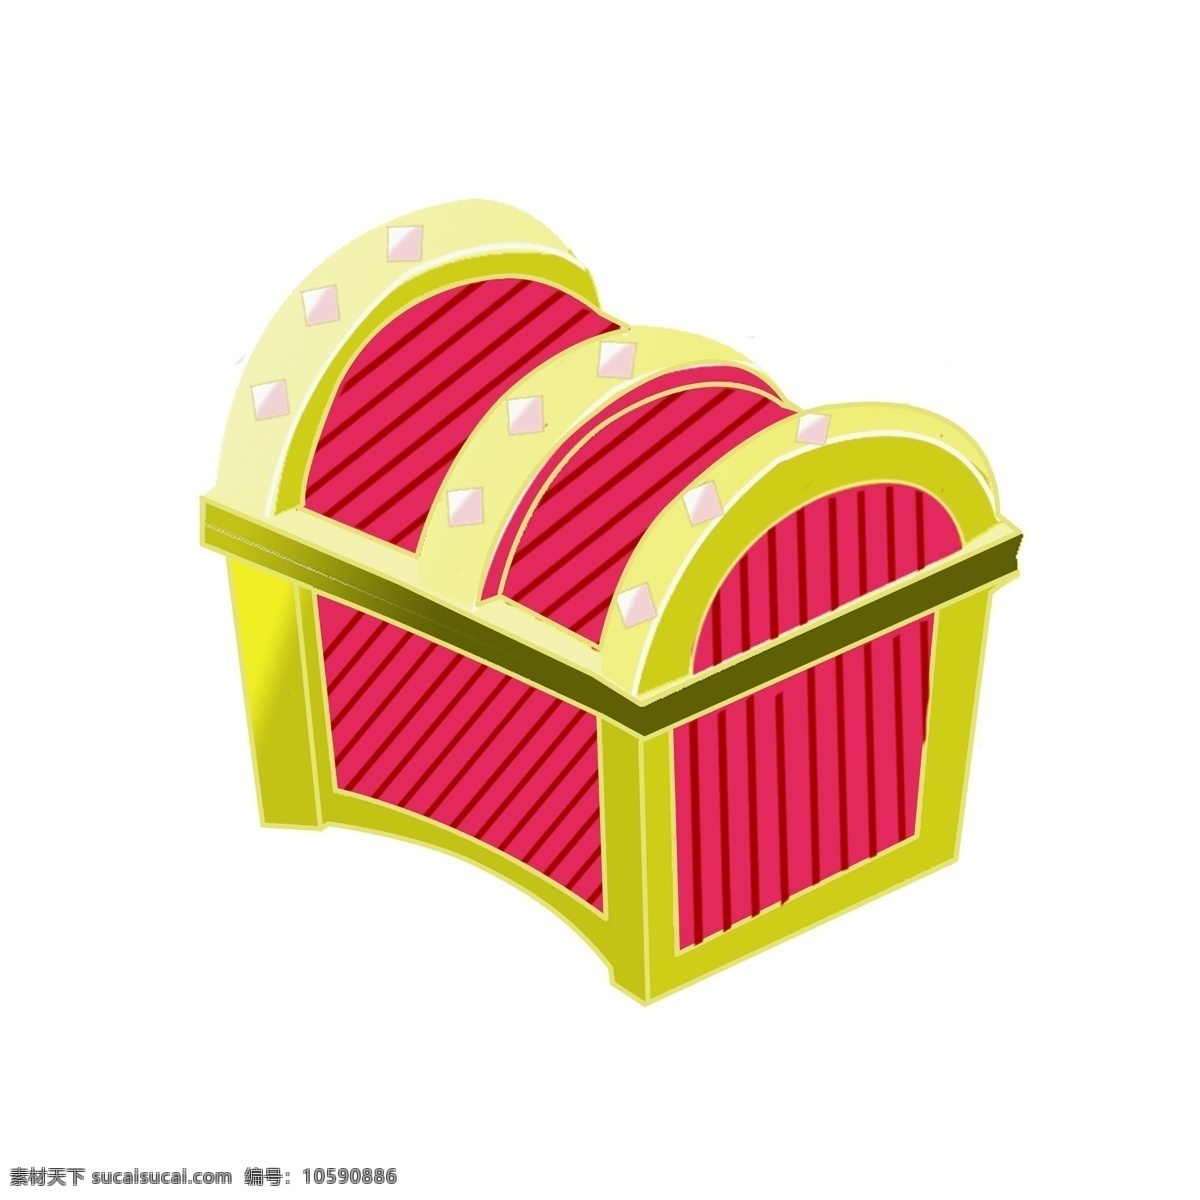 红色 宝 箱 装饰 插画 红色的宝箱 圆弧形宝箱 金边装饰 卡通箱子 木质箱子 宝藏宝箱插画 创意宝箱